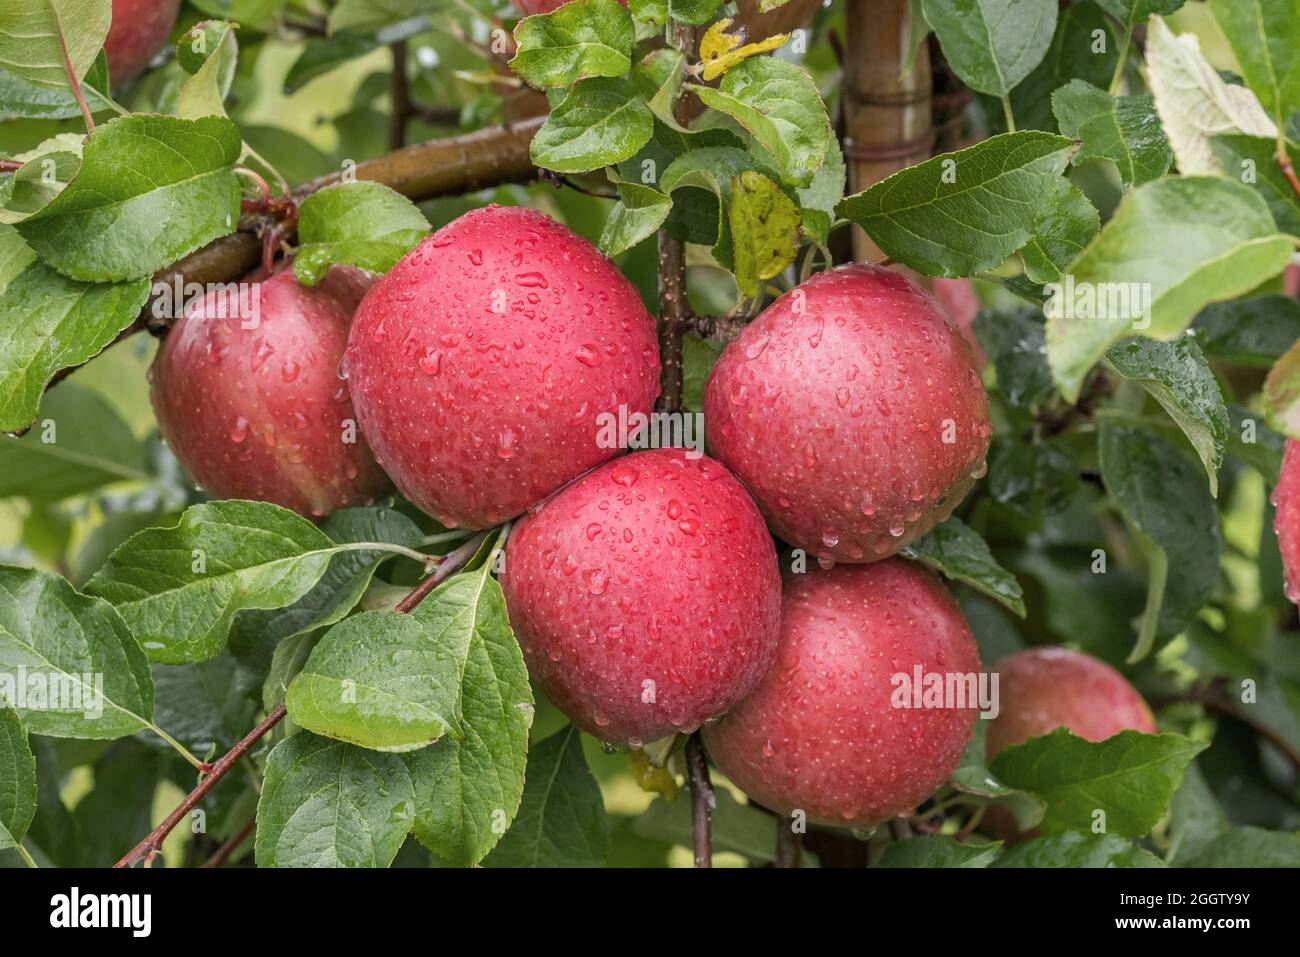 https://c8.alamy.com/comp/2GGTY9Y/apple-malus-domestica-fuji-malus-domestica-fuji-apples-on-a-tre-cultivar-fuji-2GGTY9Y.jpg